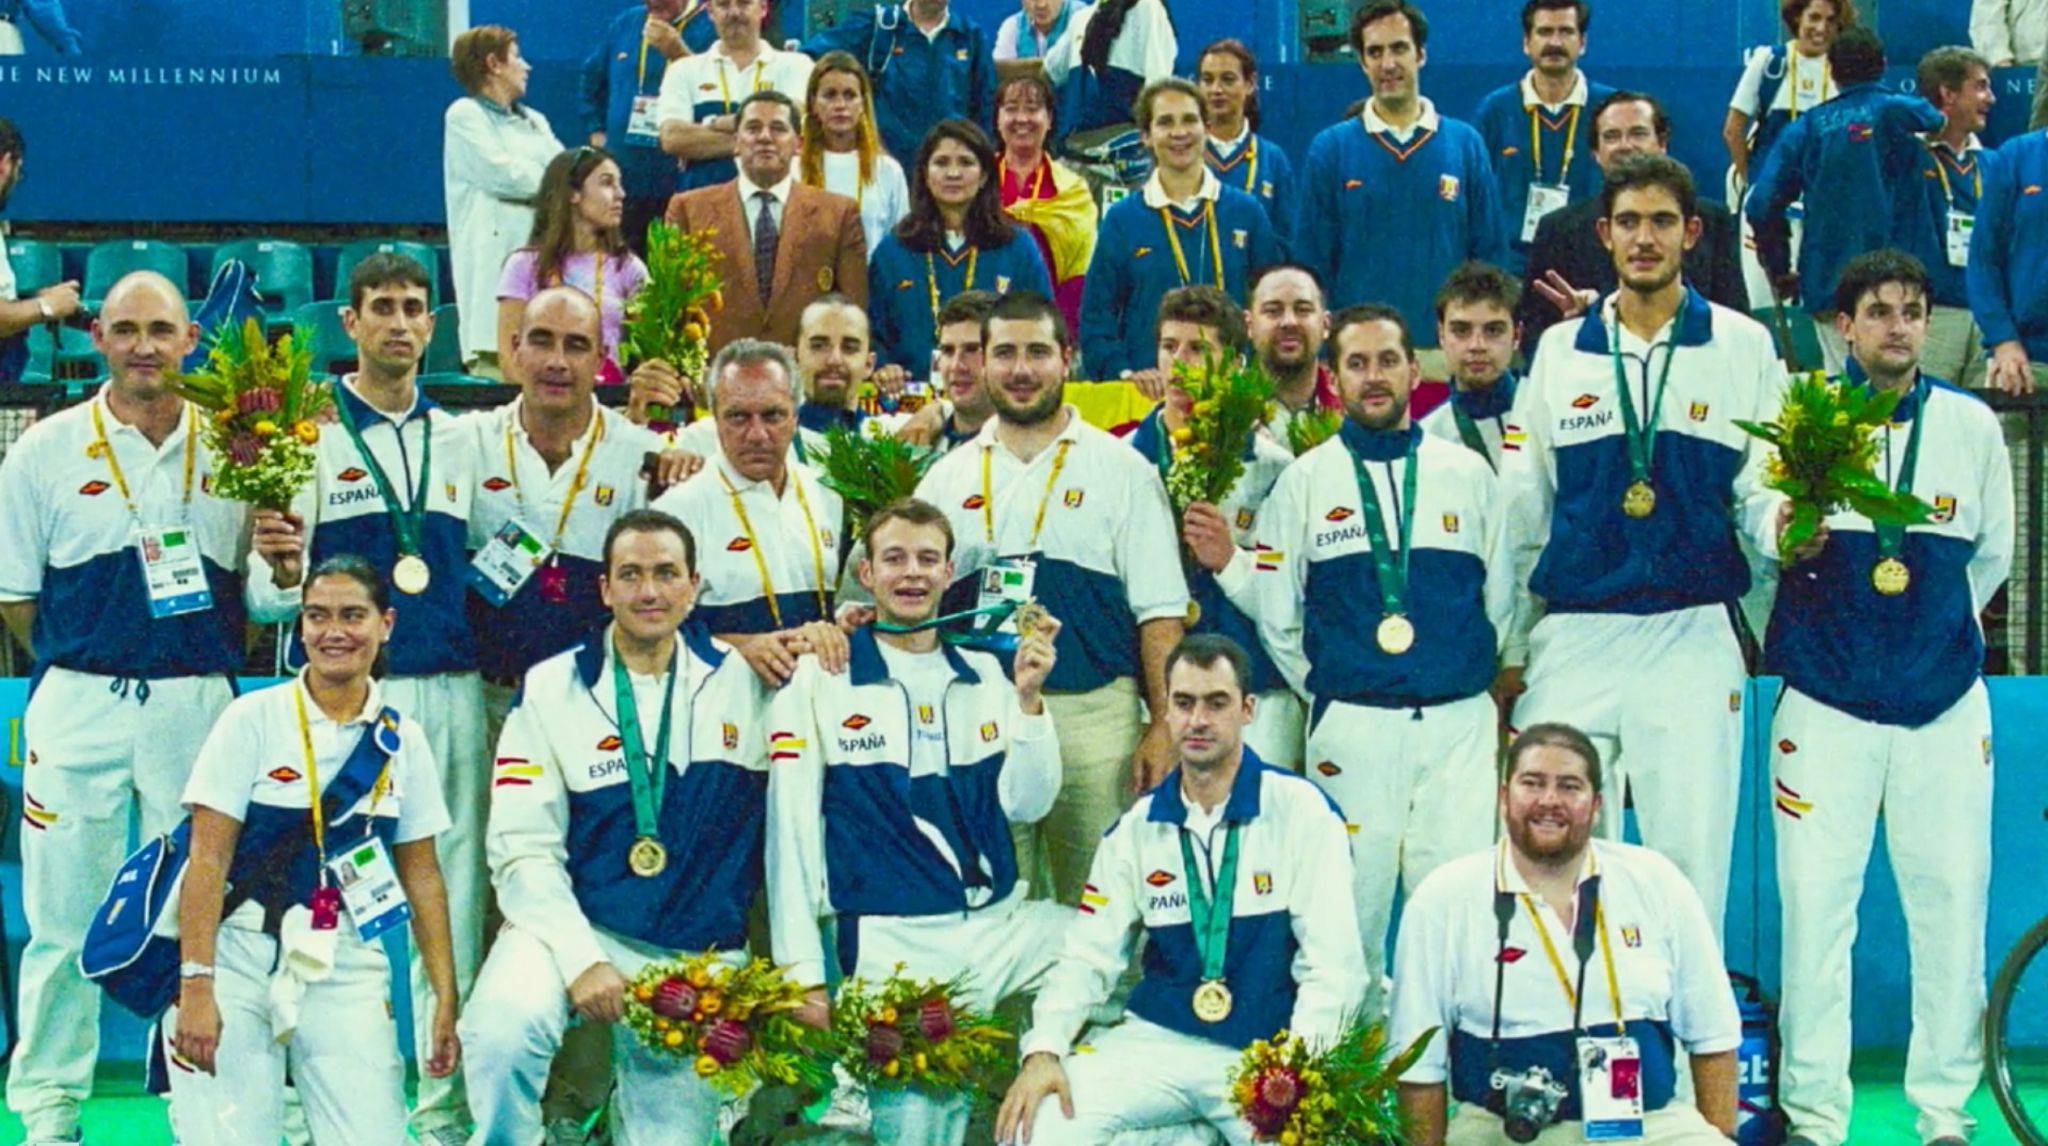 Баскетбольная команда с золотыми медалями, которую они должны были вернуть - Фернандо Мартин Висенте в коричневой куртке стоит позади игроков